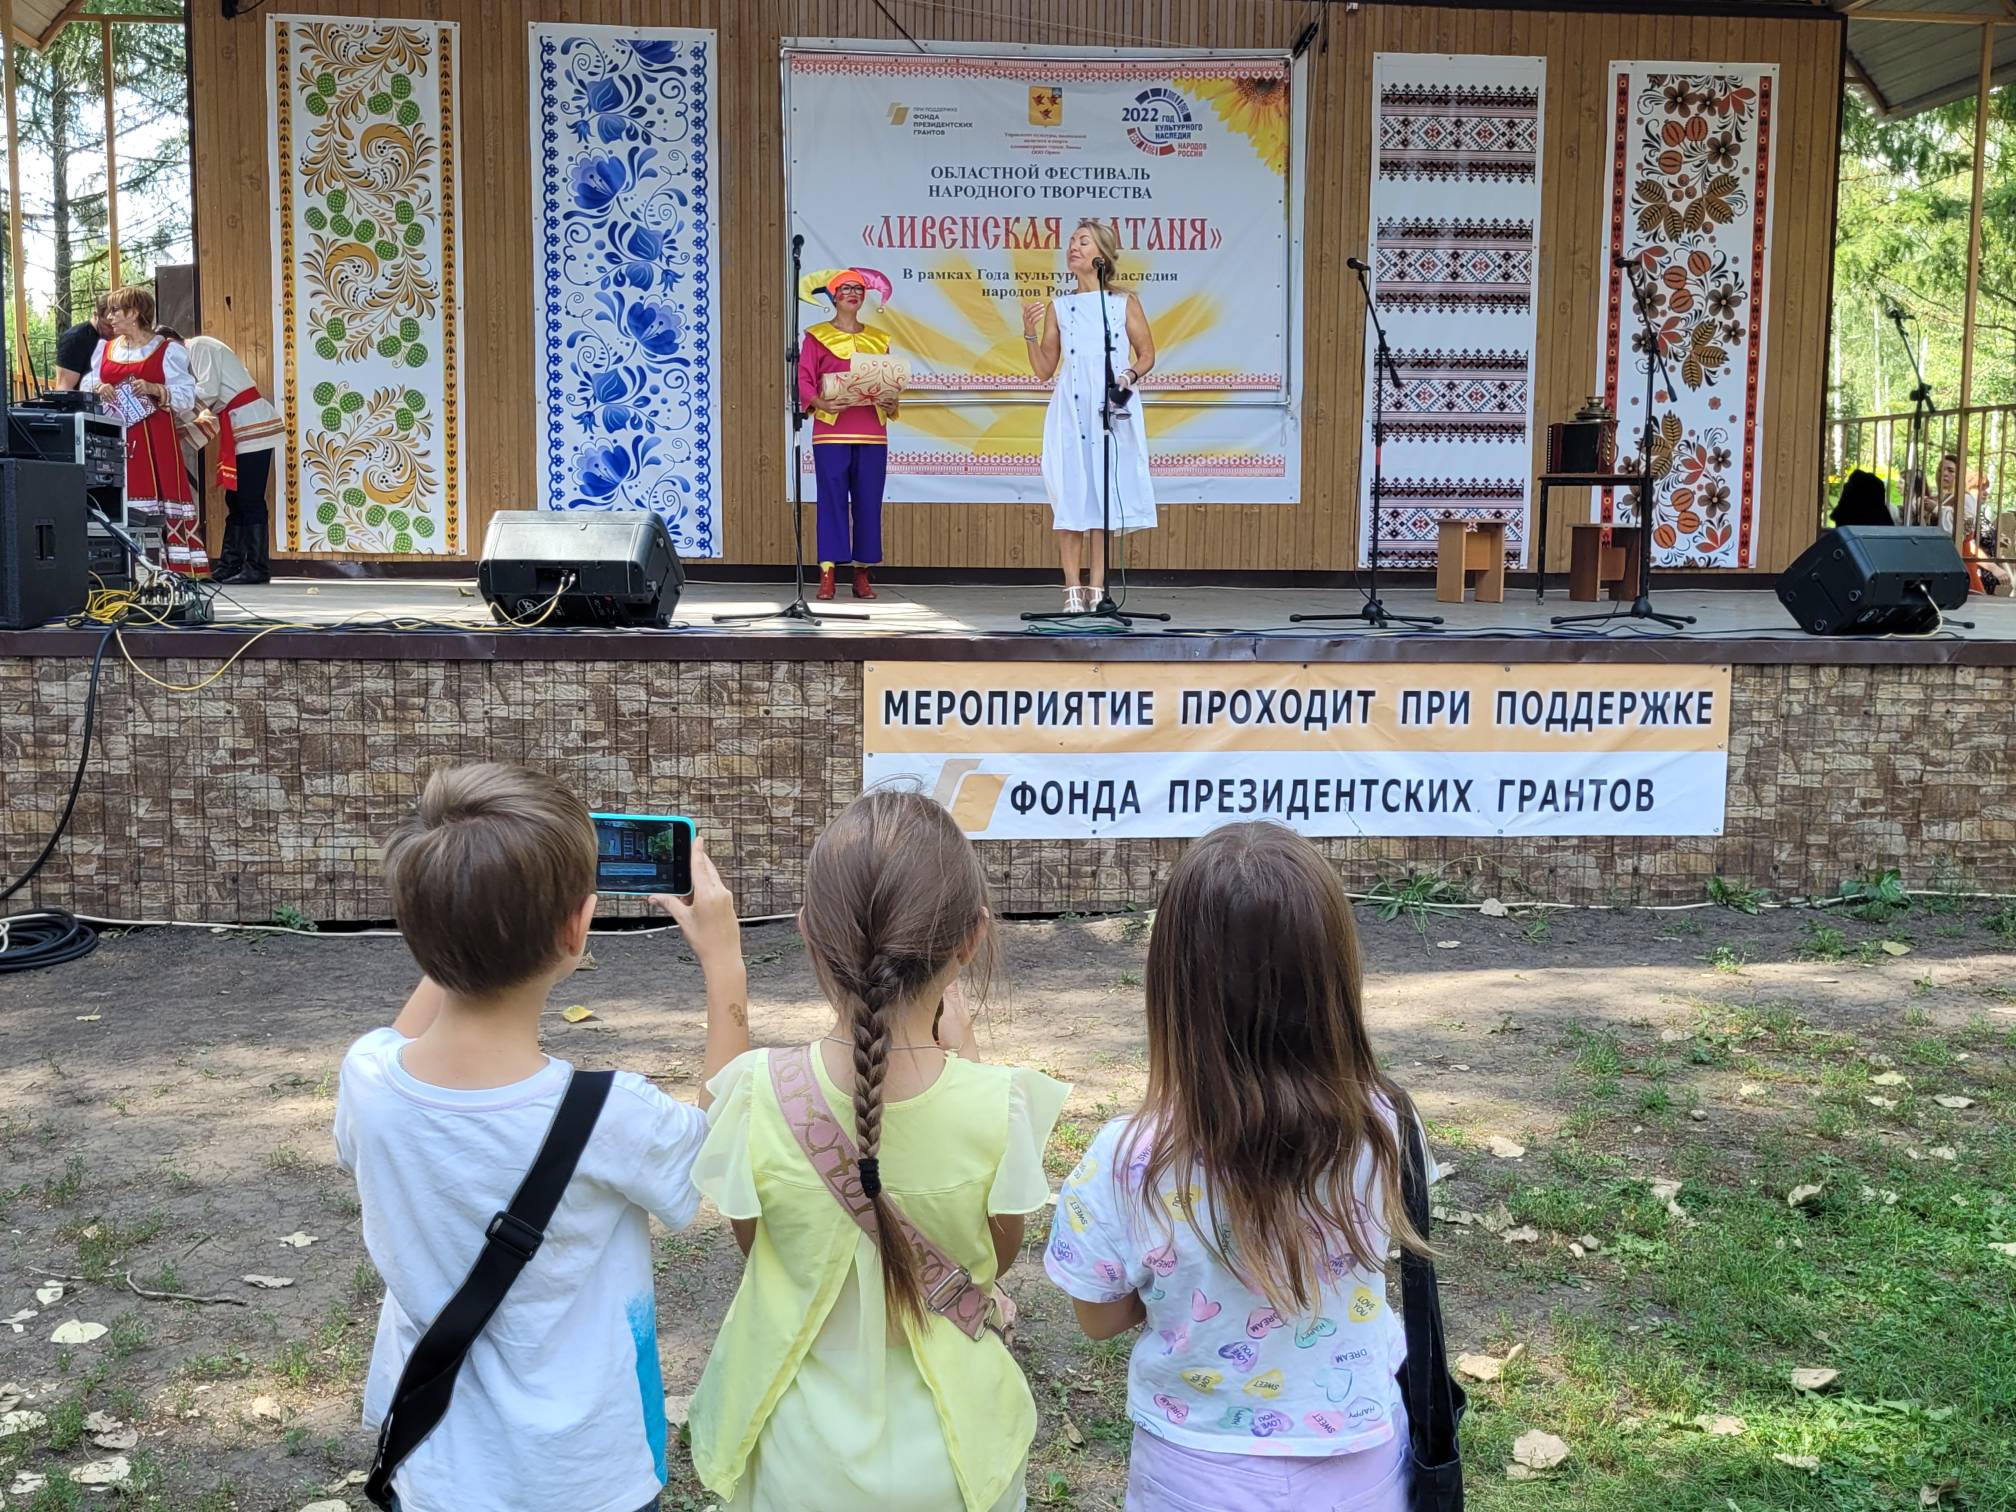 В Ливнах состоялось открытие пристройки к зданию гимназии